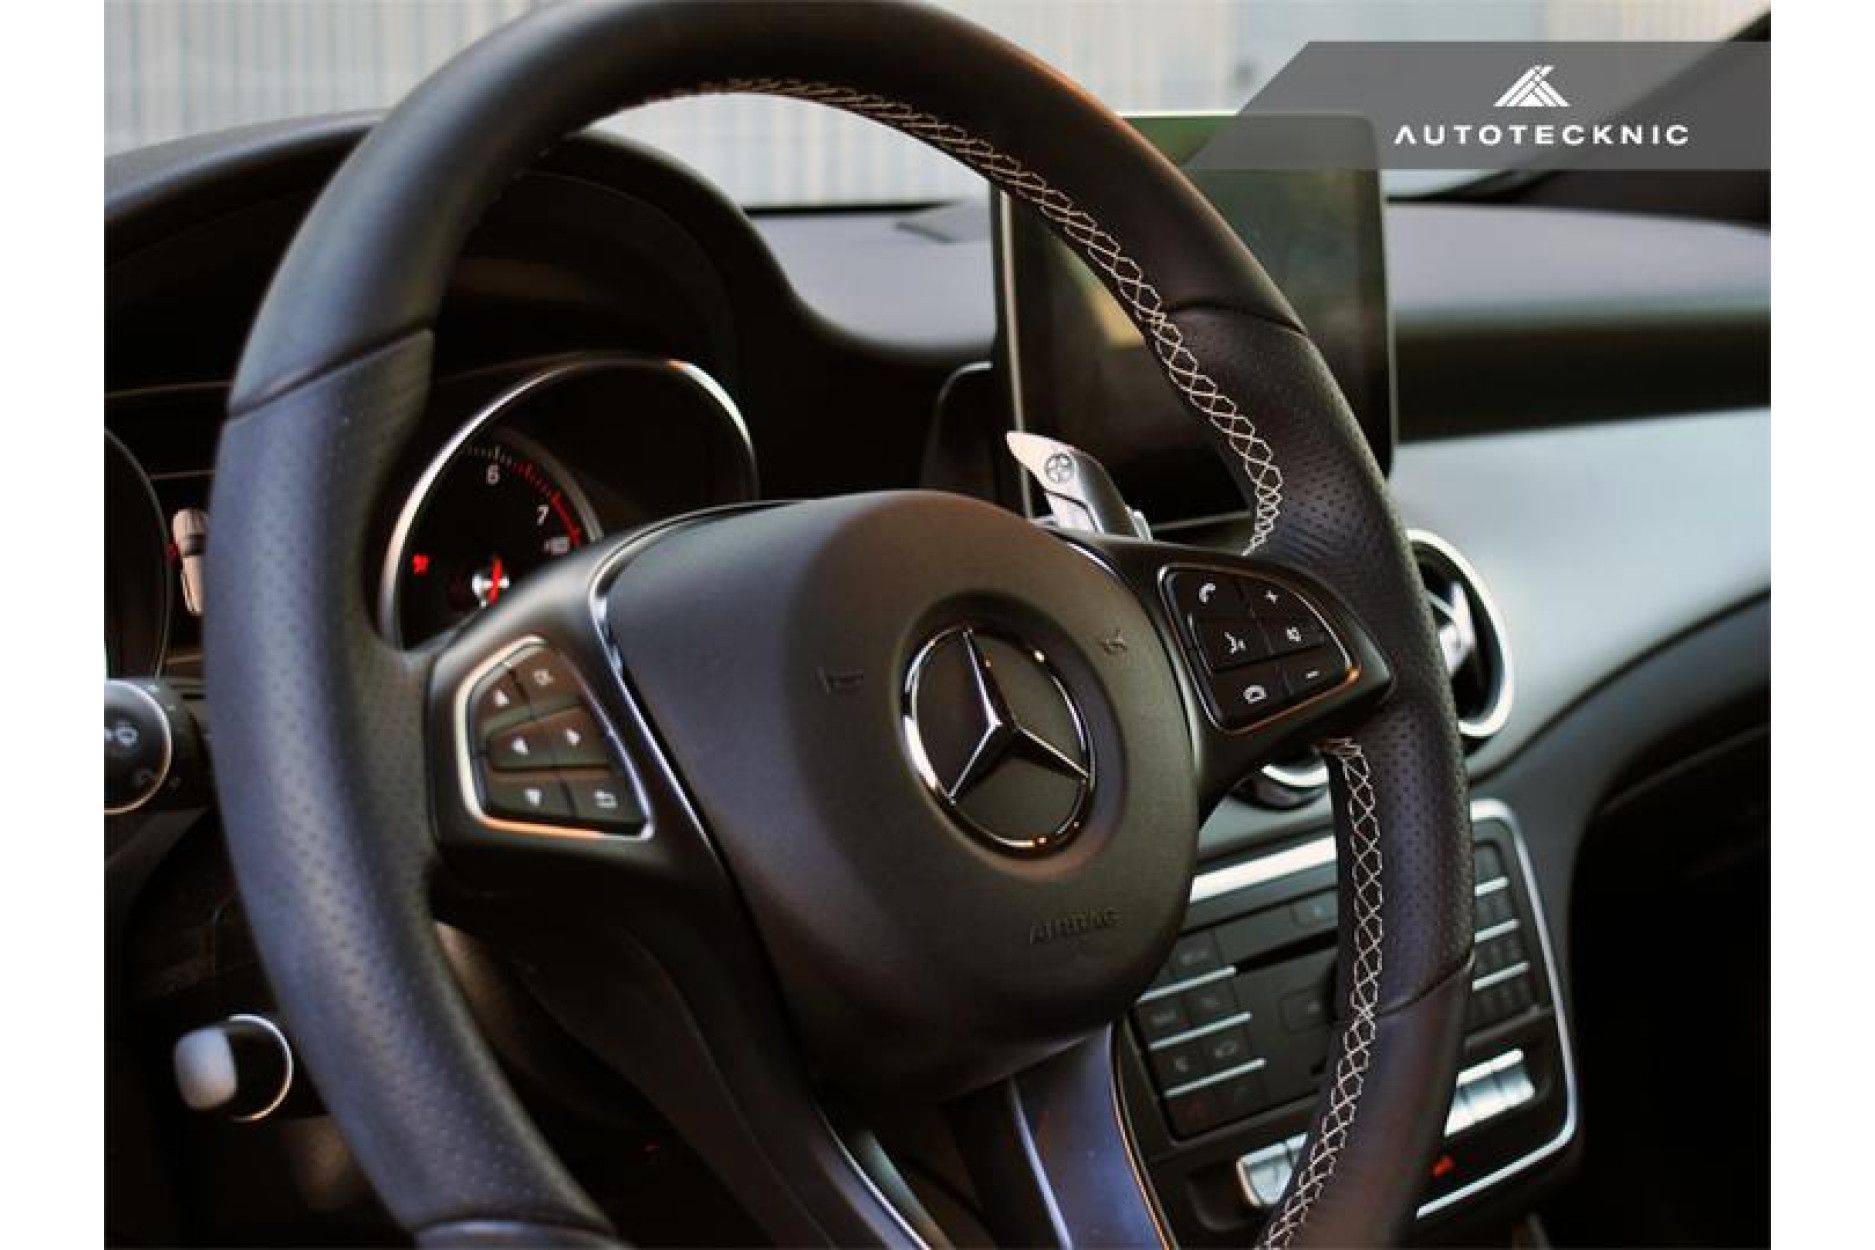 Autotecknic Aluminium Schaltwippen für Mercedes Benz kein AMG Steel Grey -  online kaufen bei CFD